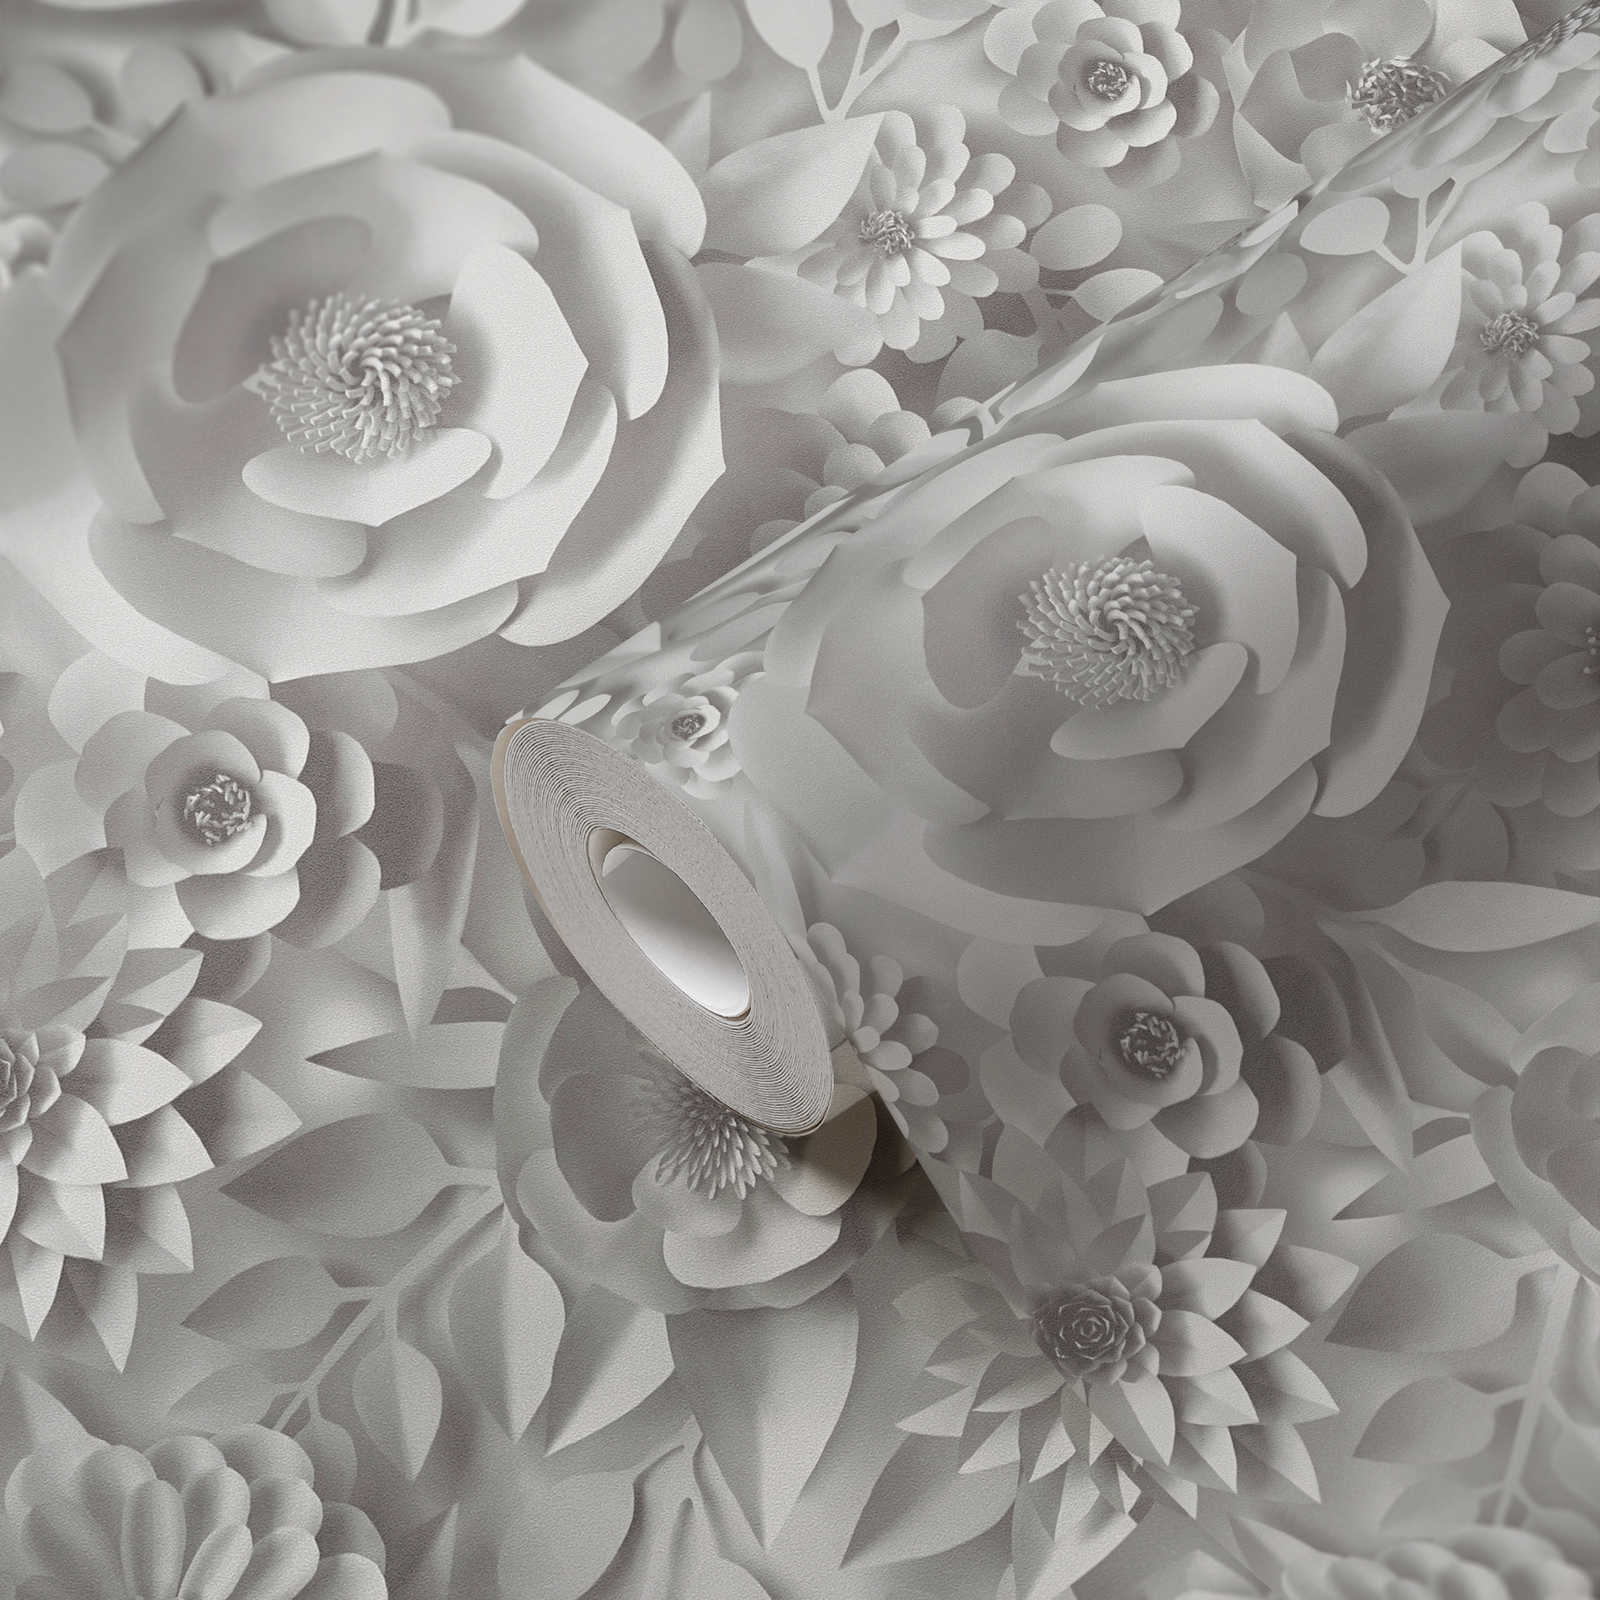             Carta da parati 3D con fiori di carta, motivo grafico floreale - Bianco
        